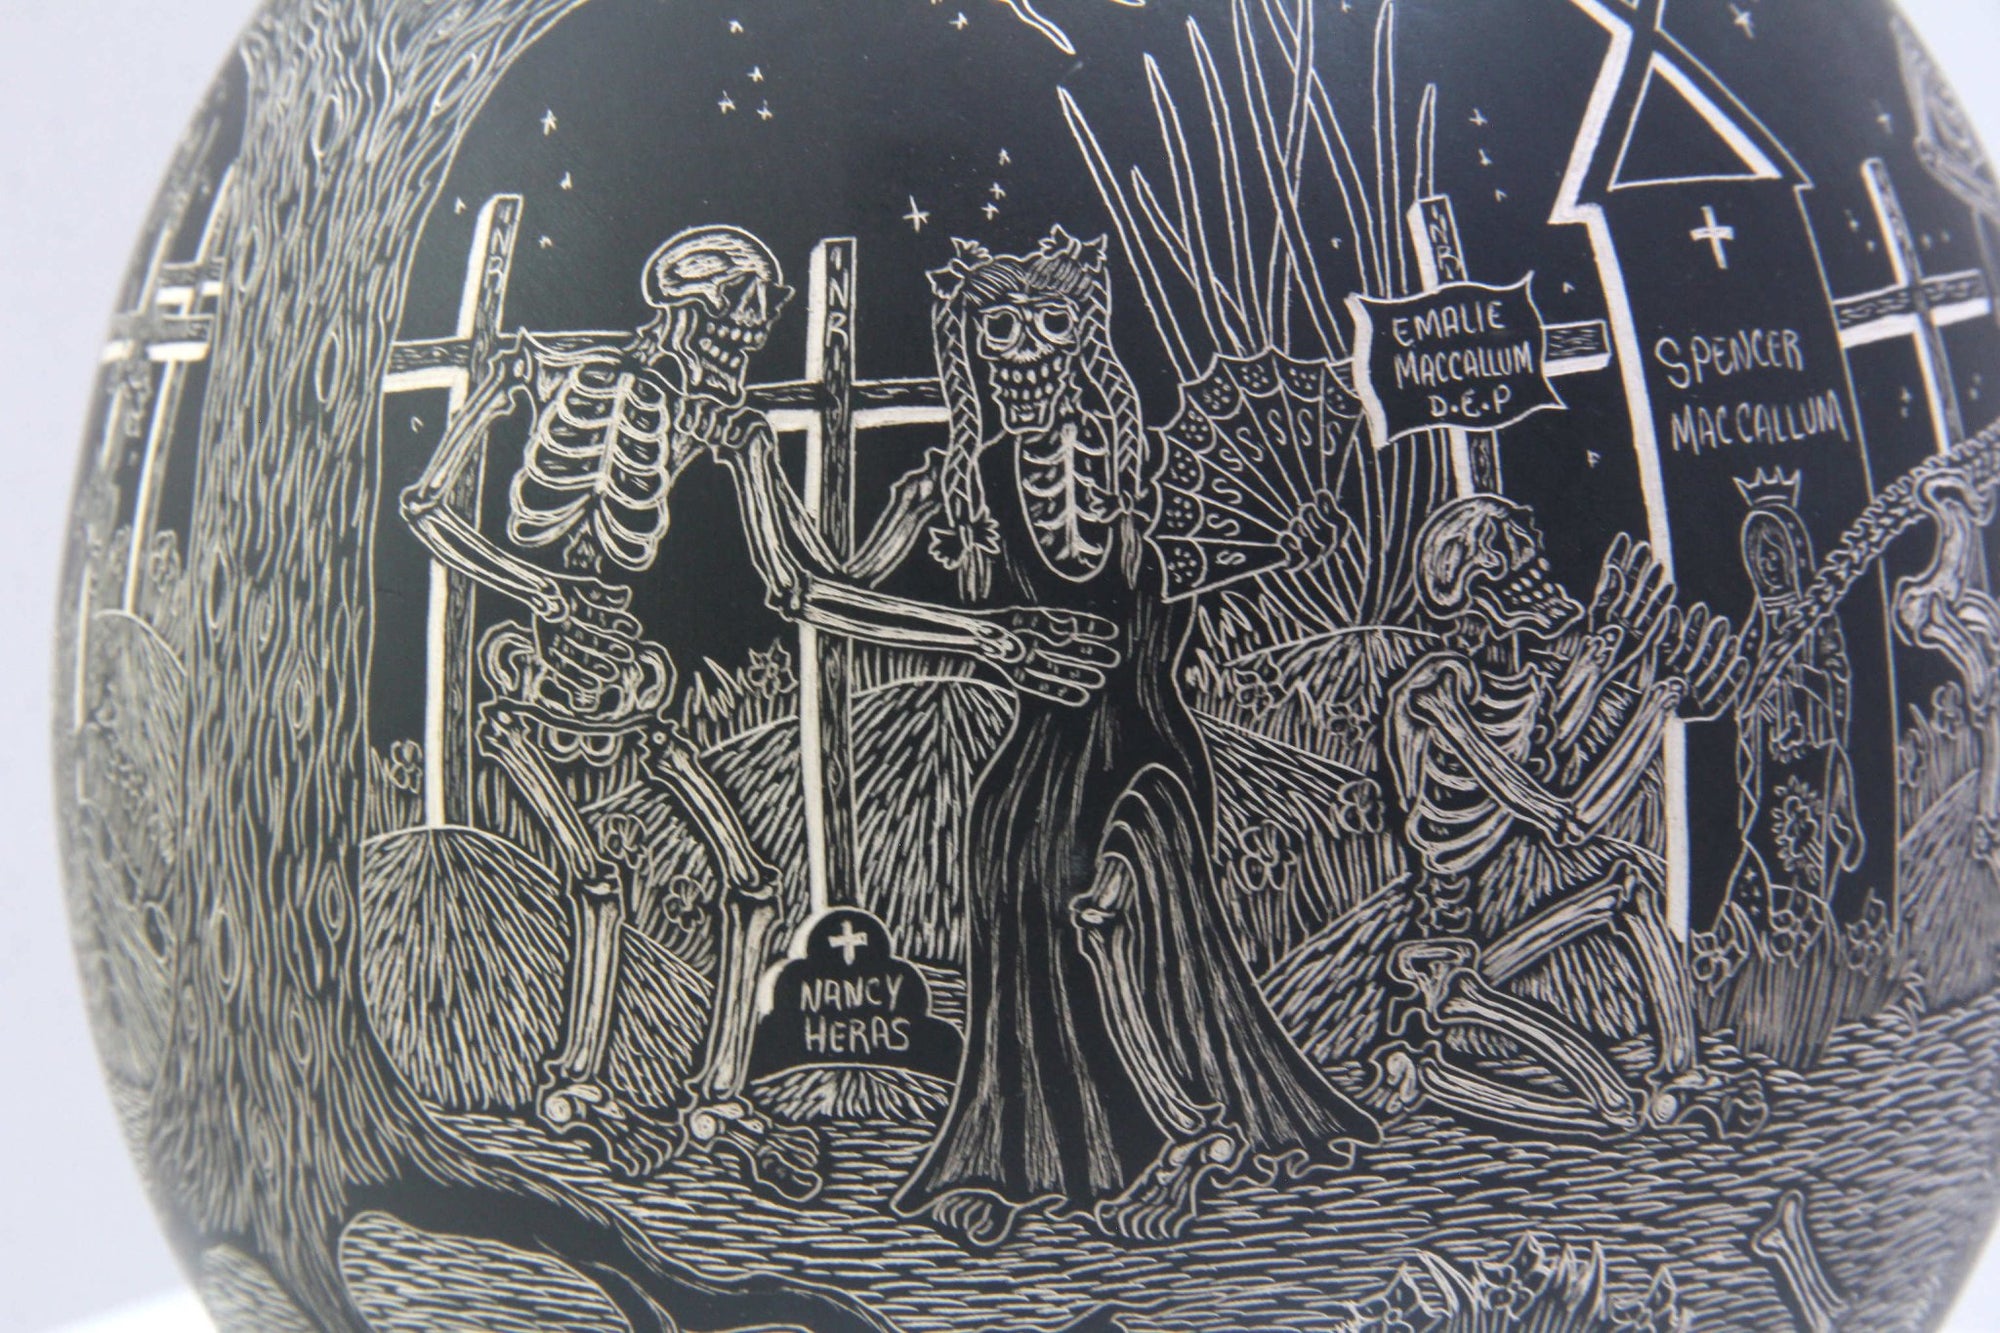 Ceramica Mata Ortiz - Notte dei morti, gufo che vola di notte - Arte Huichol - Marakame